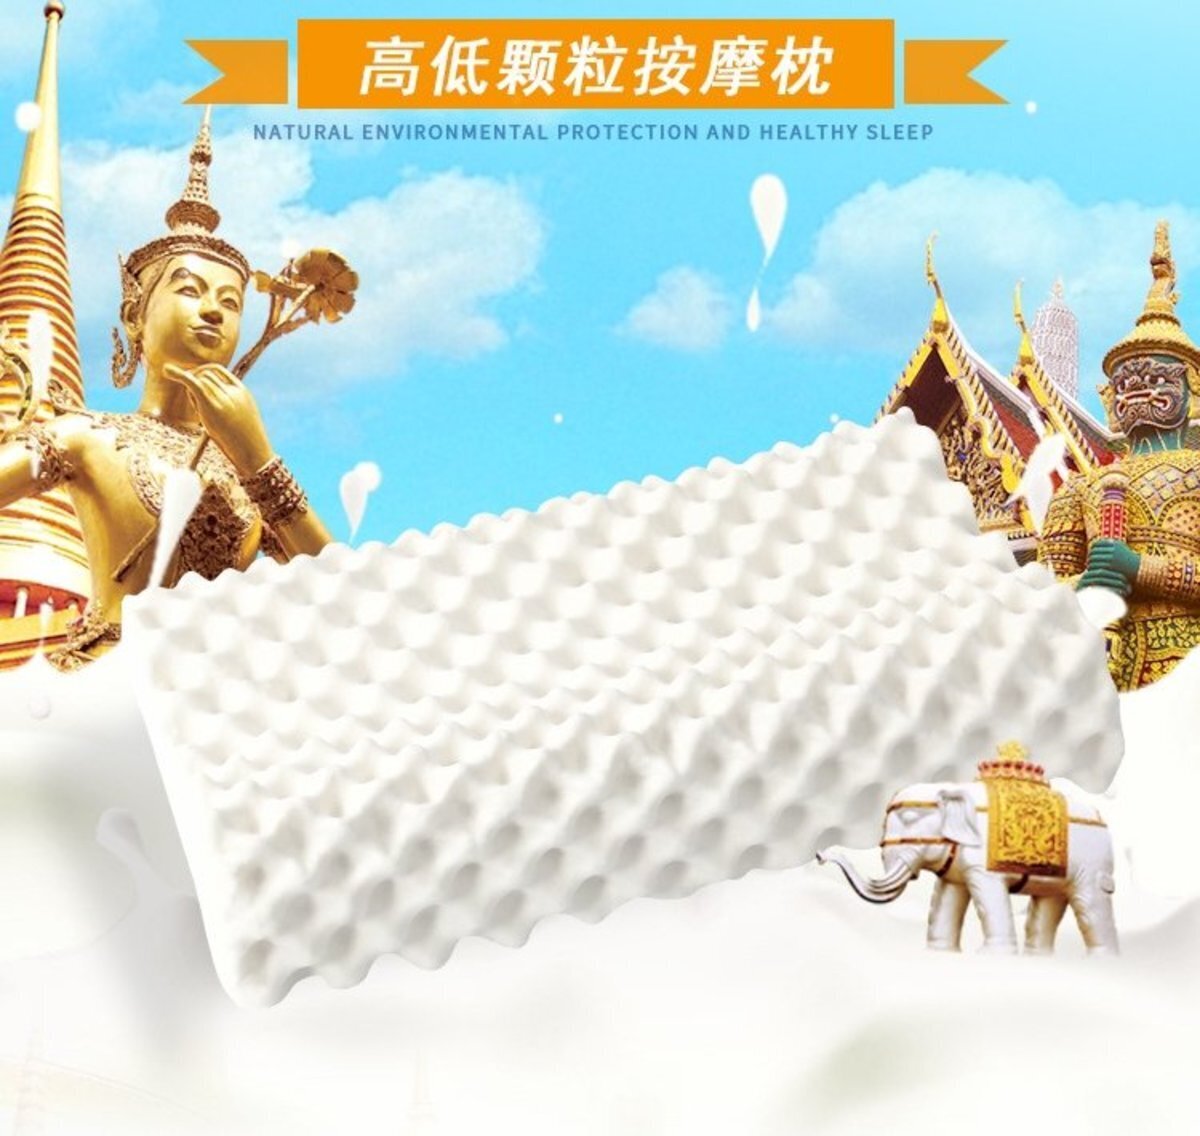 健康乳膠枕泰國天然乳膠枕 ( P1 )顆粒按摩枕透氣枕頭(高硬型)  #SKY